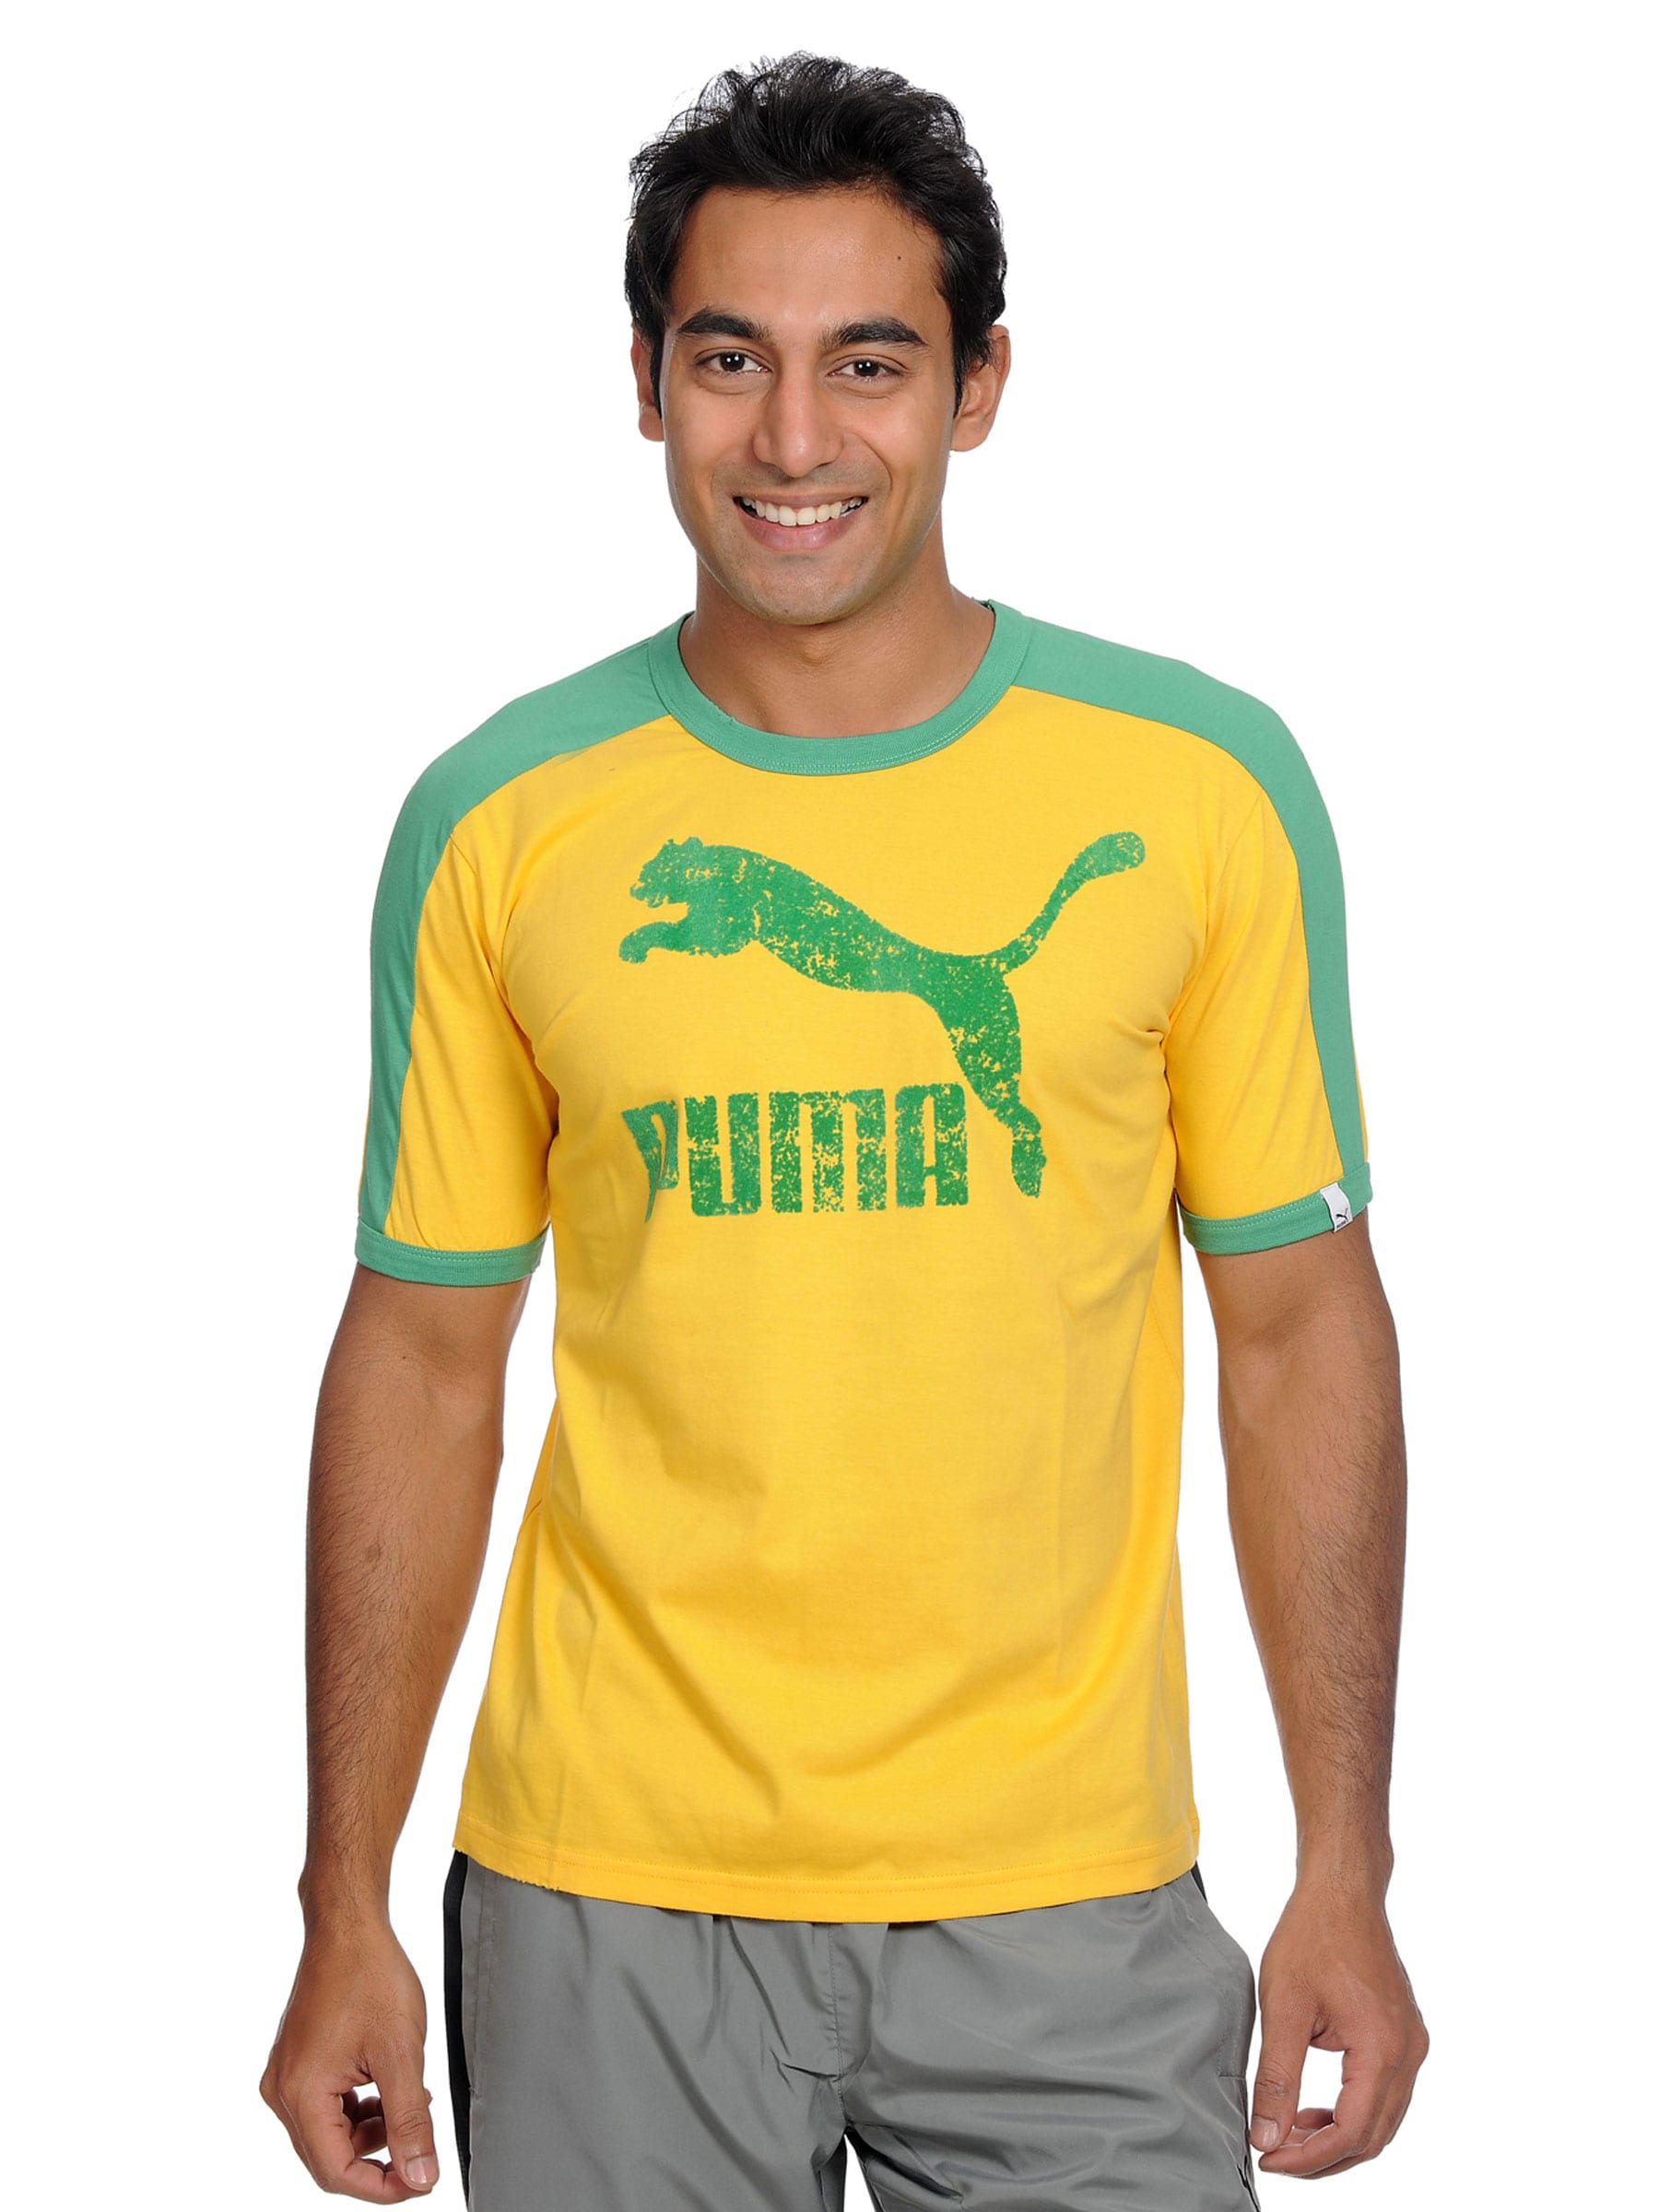 Puma Men's Heroes T-shirt